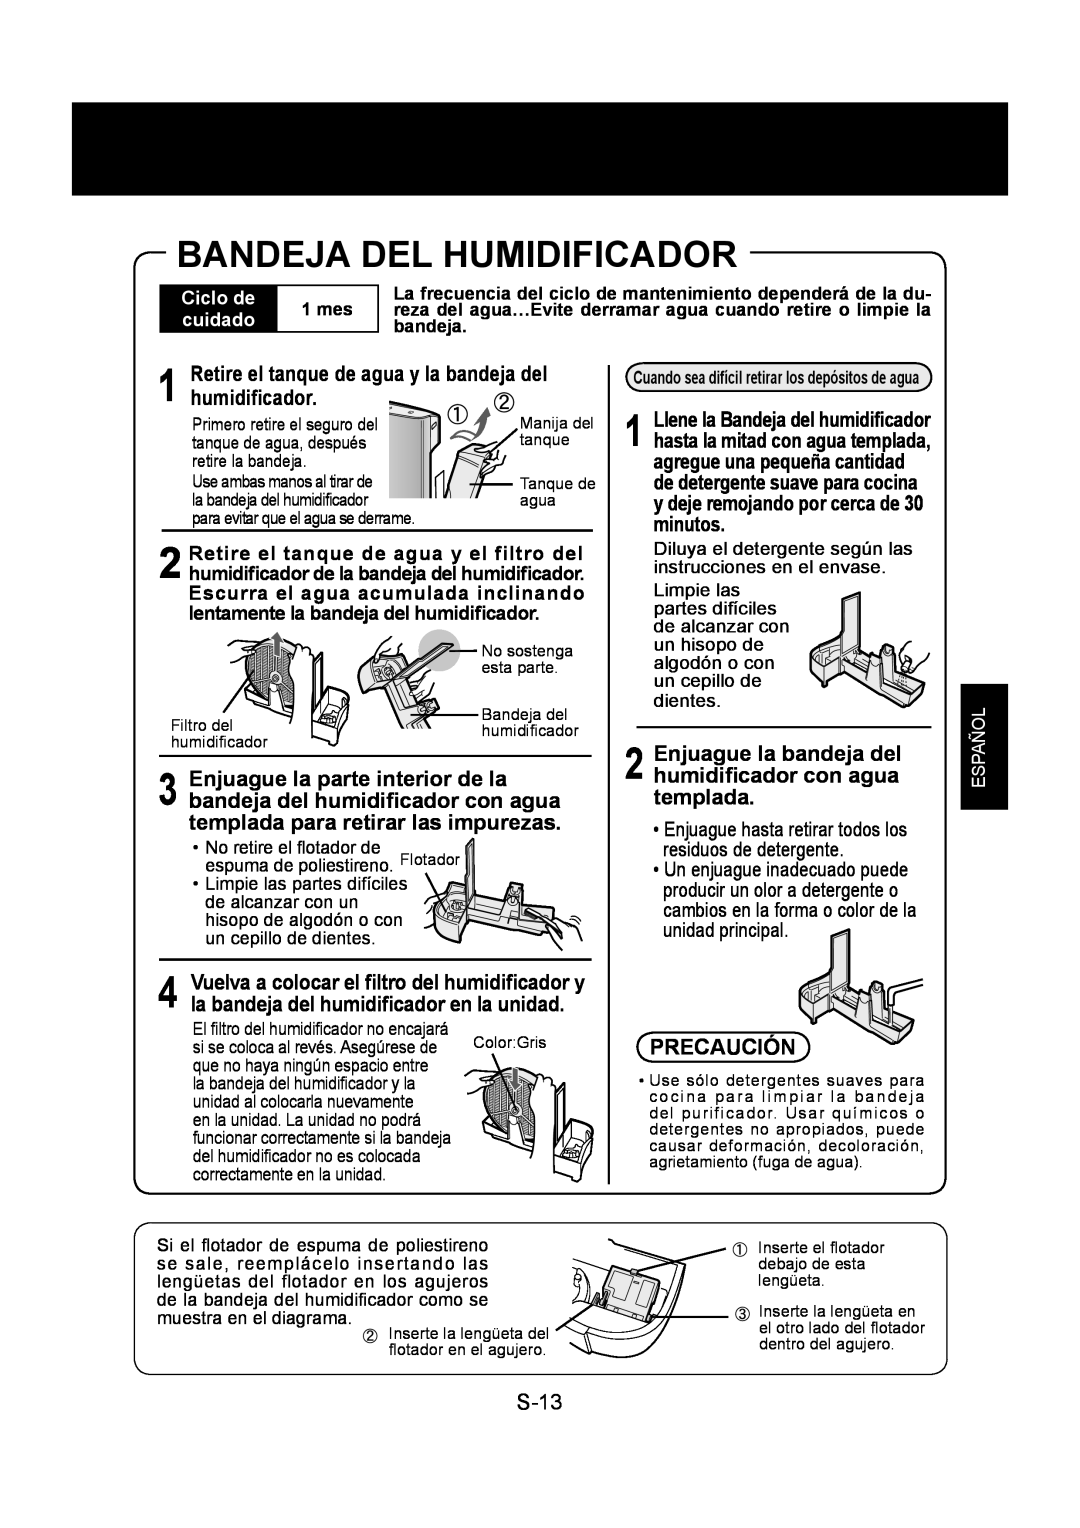 Sharp KC-860U operation manual Bandeja Del Humidificador, humidiﬁcador, S-13, Precaución, Ciclo de, cuidado, Español 